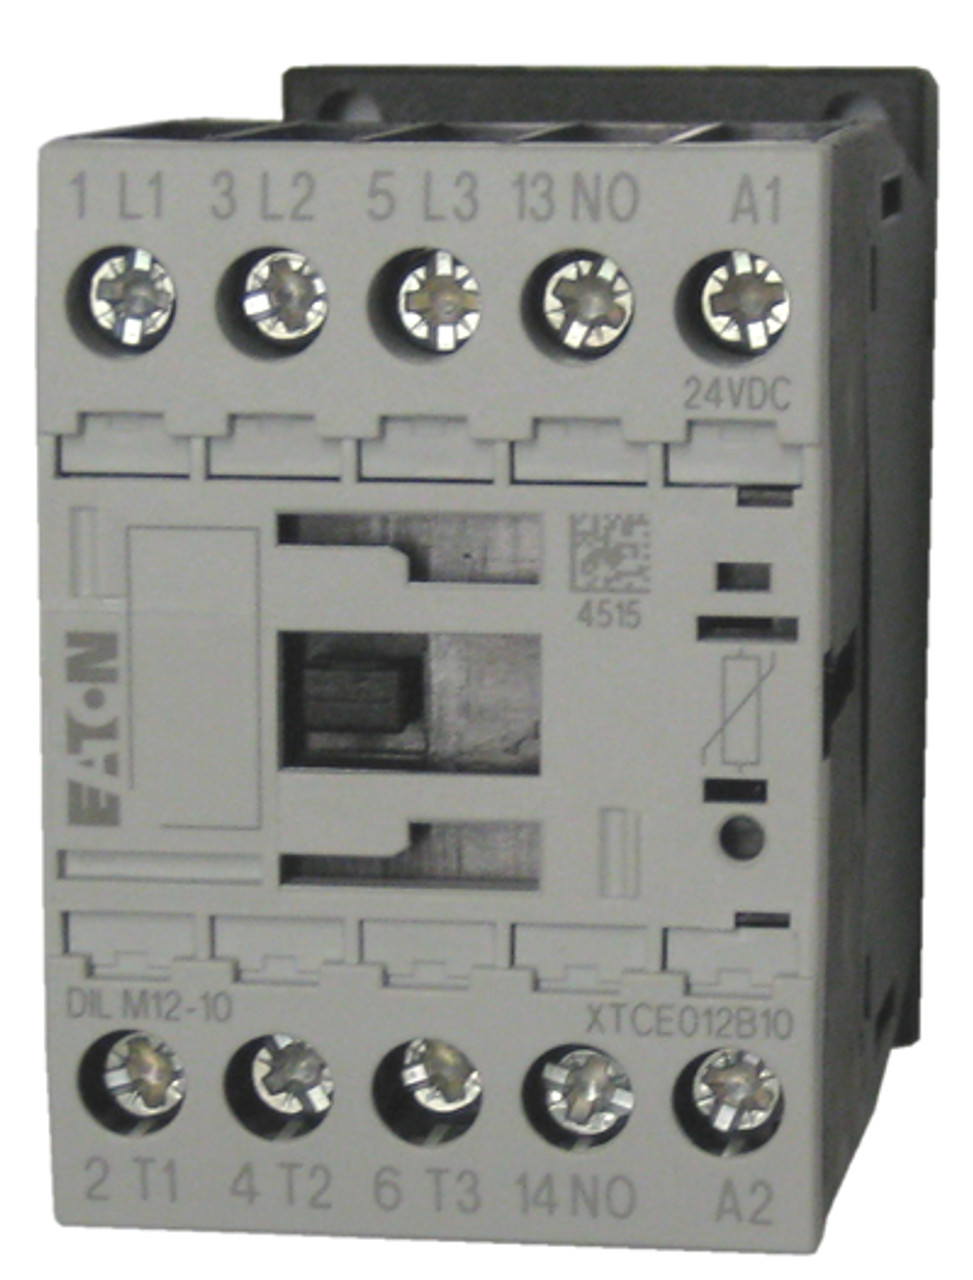 Eaton/Moeller DILM12-10 48 volt DC contactor